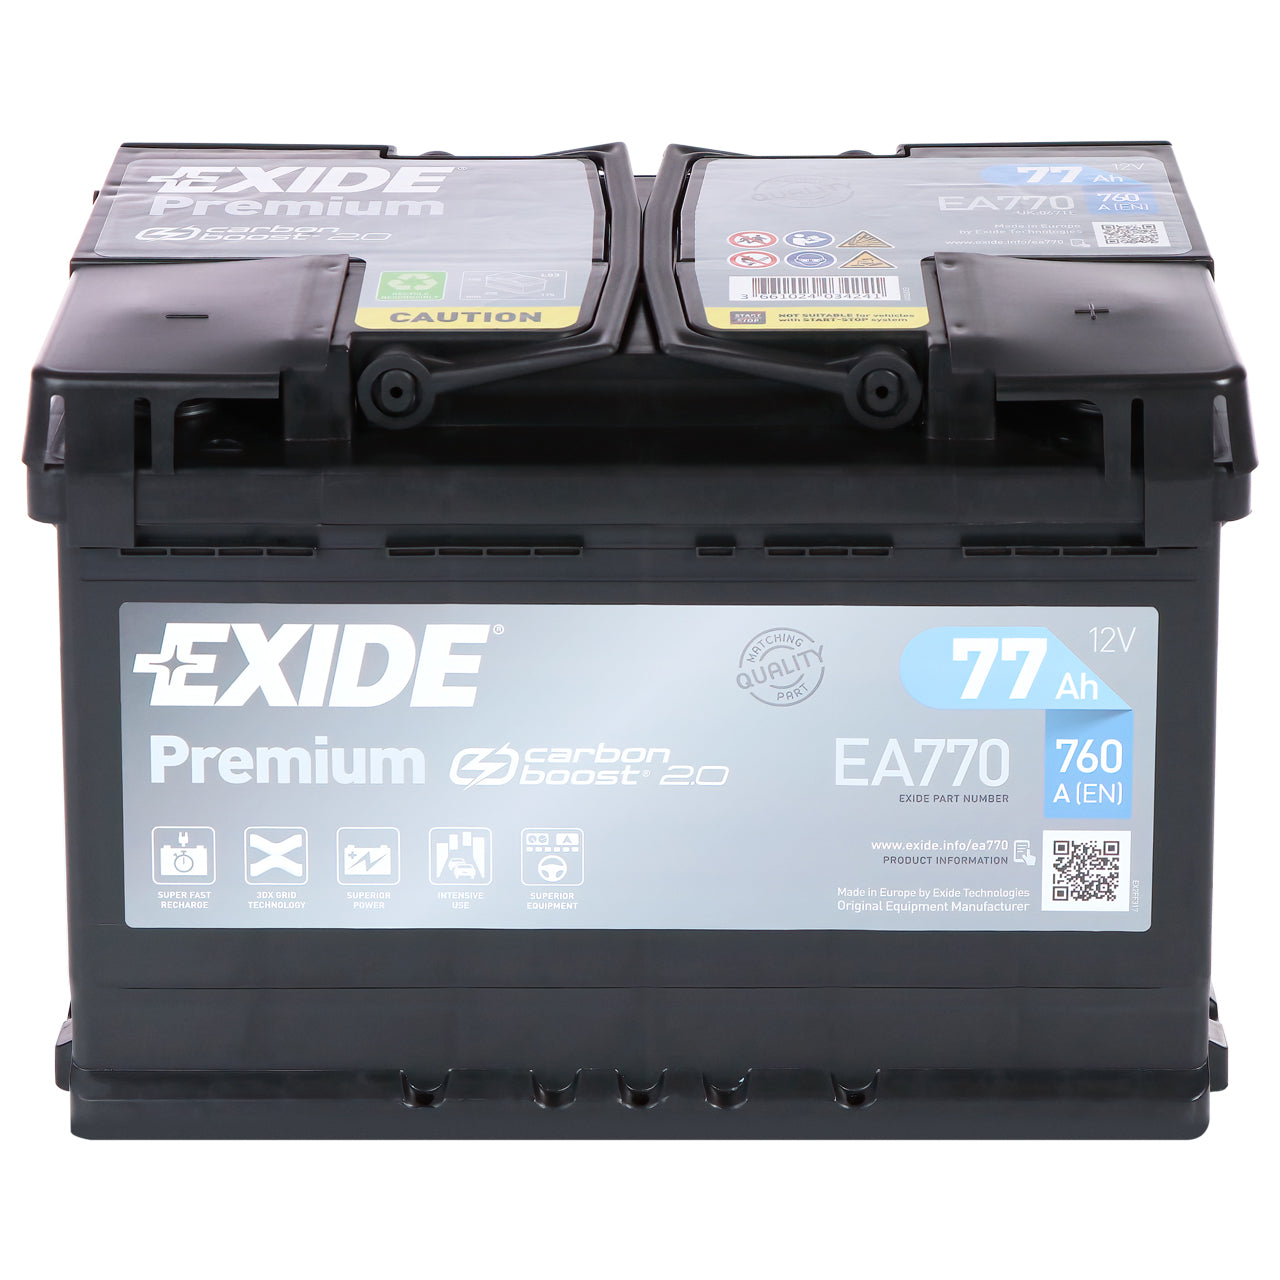 Exide lead acid, EA770 Premium Carbon Boost Autobatterie, Kompatibel mit  PKW, 12V 77Ah 760A, Schwarz, 278 x 175 x 190 mm